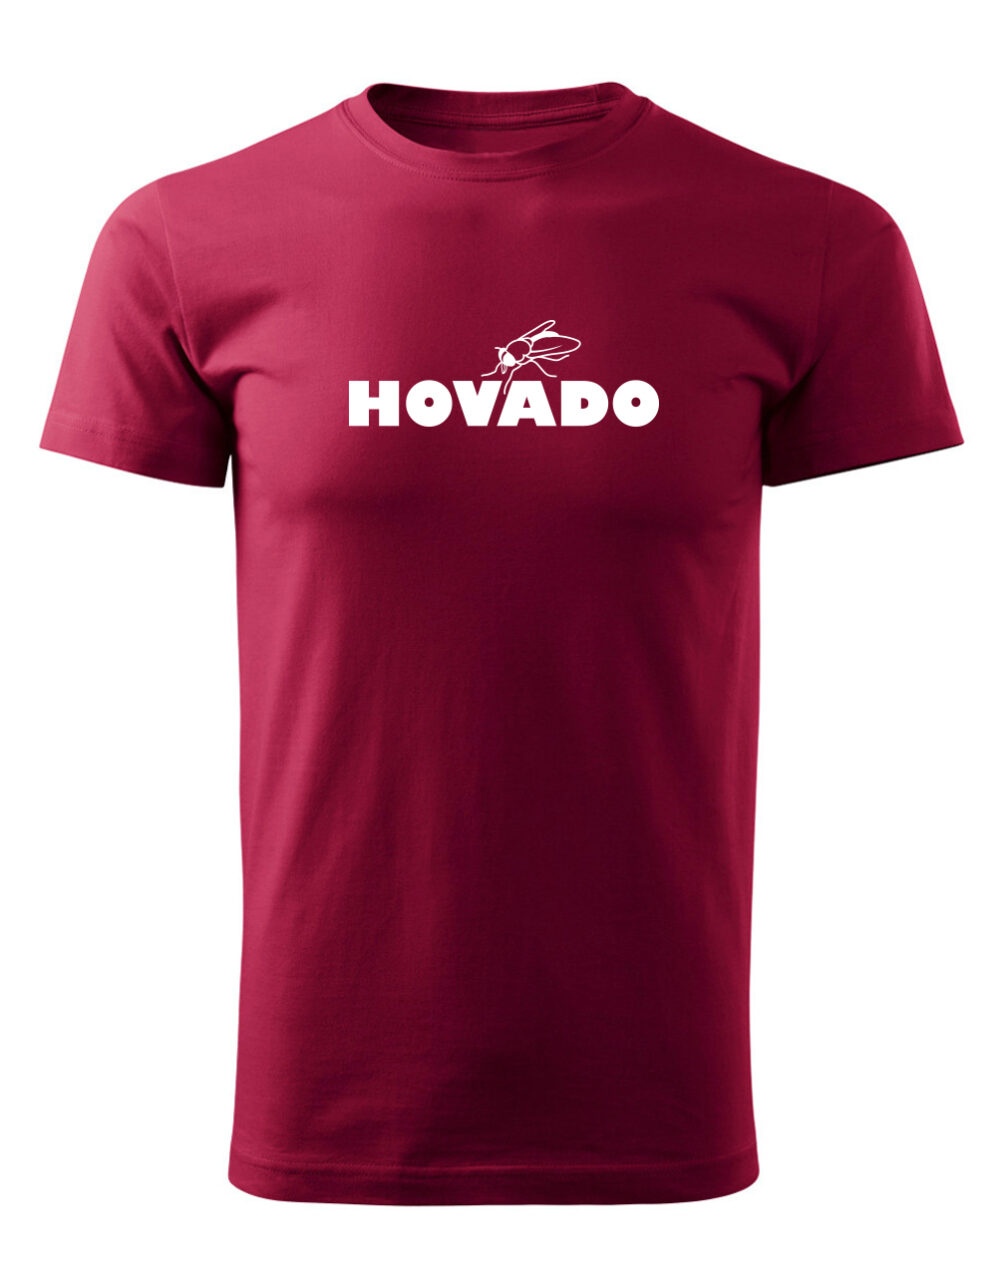 Pánské tričko s potiskem Hovado granátová